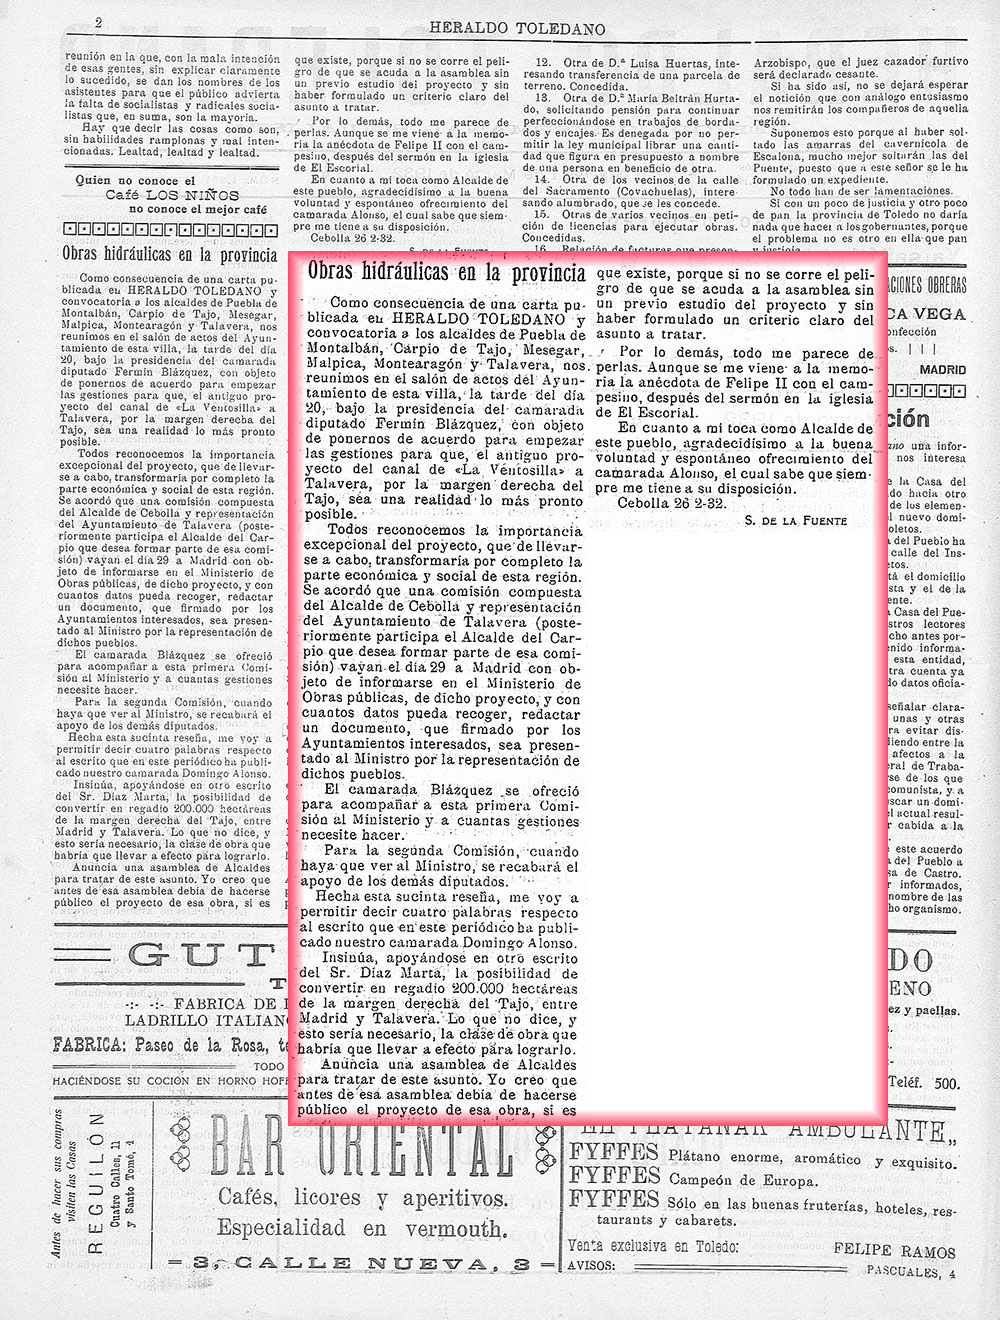 Obras hidráulicas en la provincia. El heraldo toledano (01_03_1932)